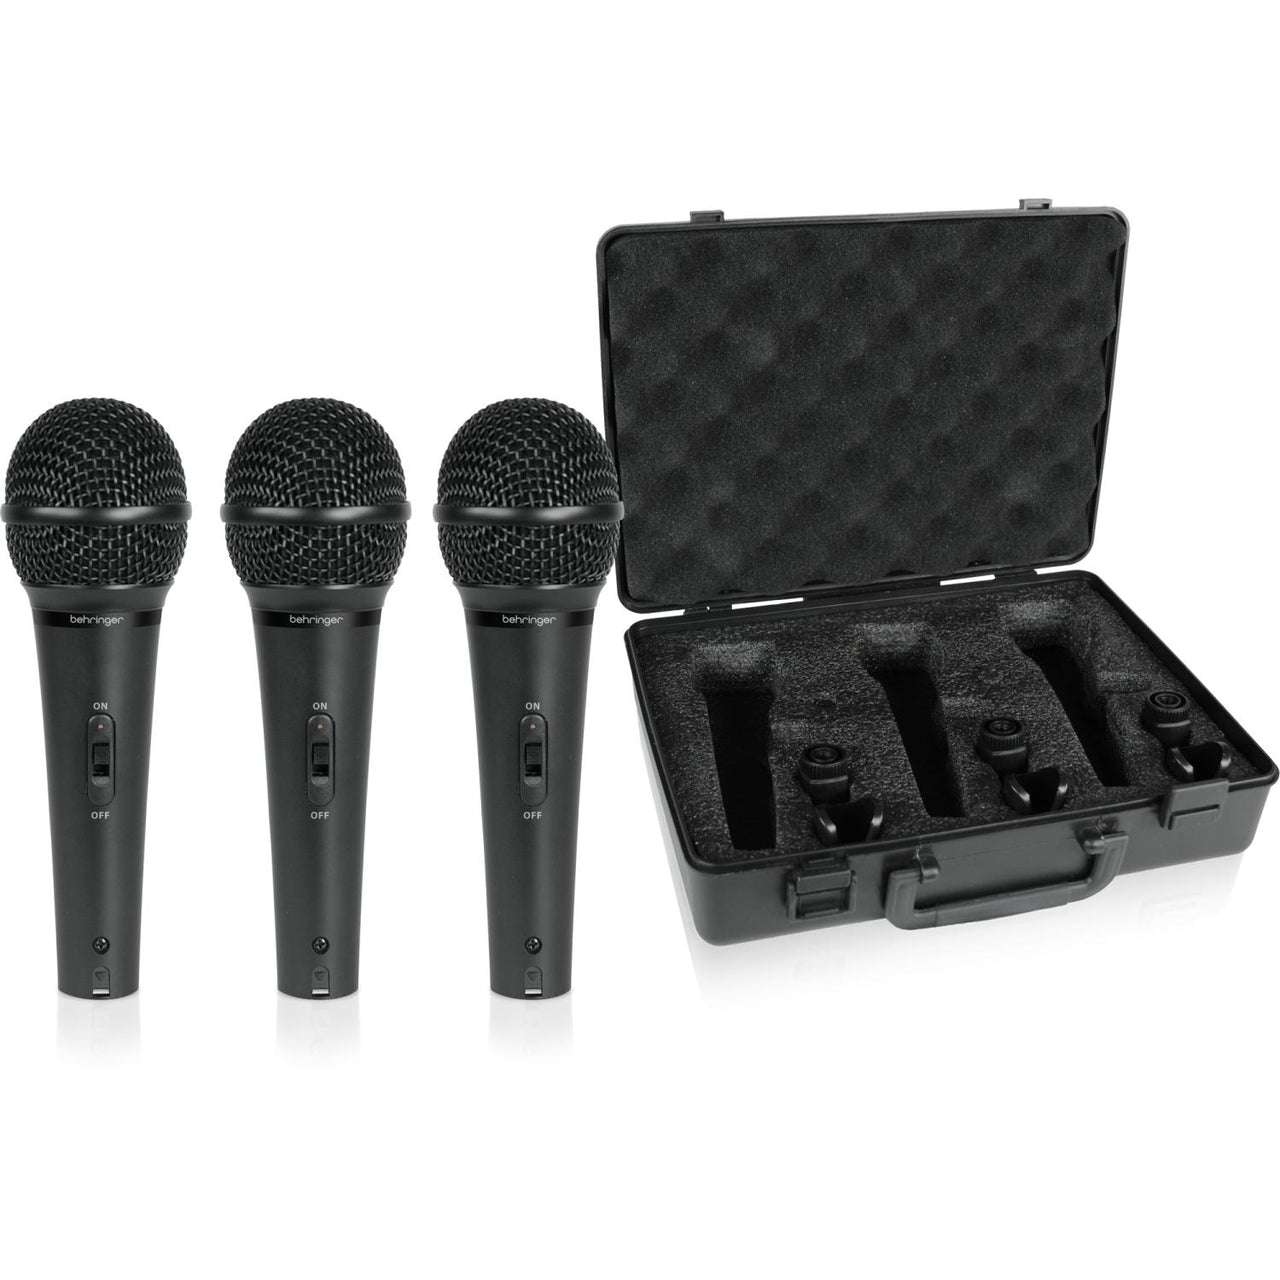 Paquete De Microfonos Behringer De Voces Dinamico (3 Pack), Xm1800s